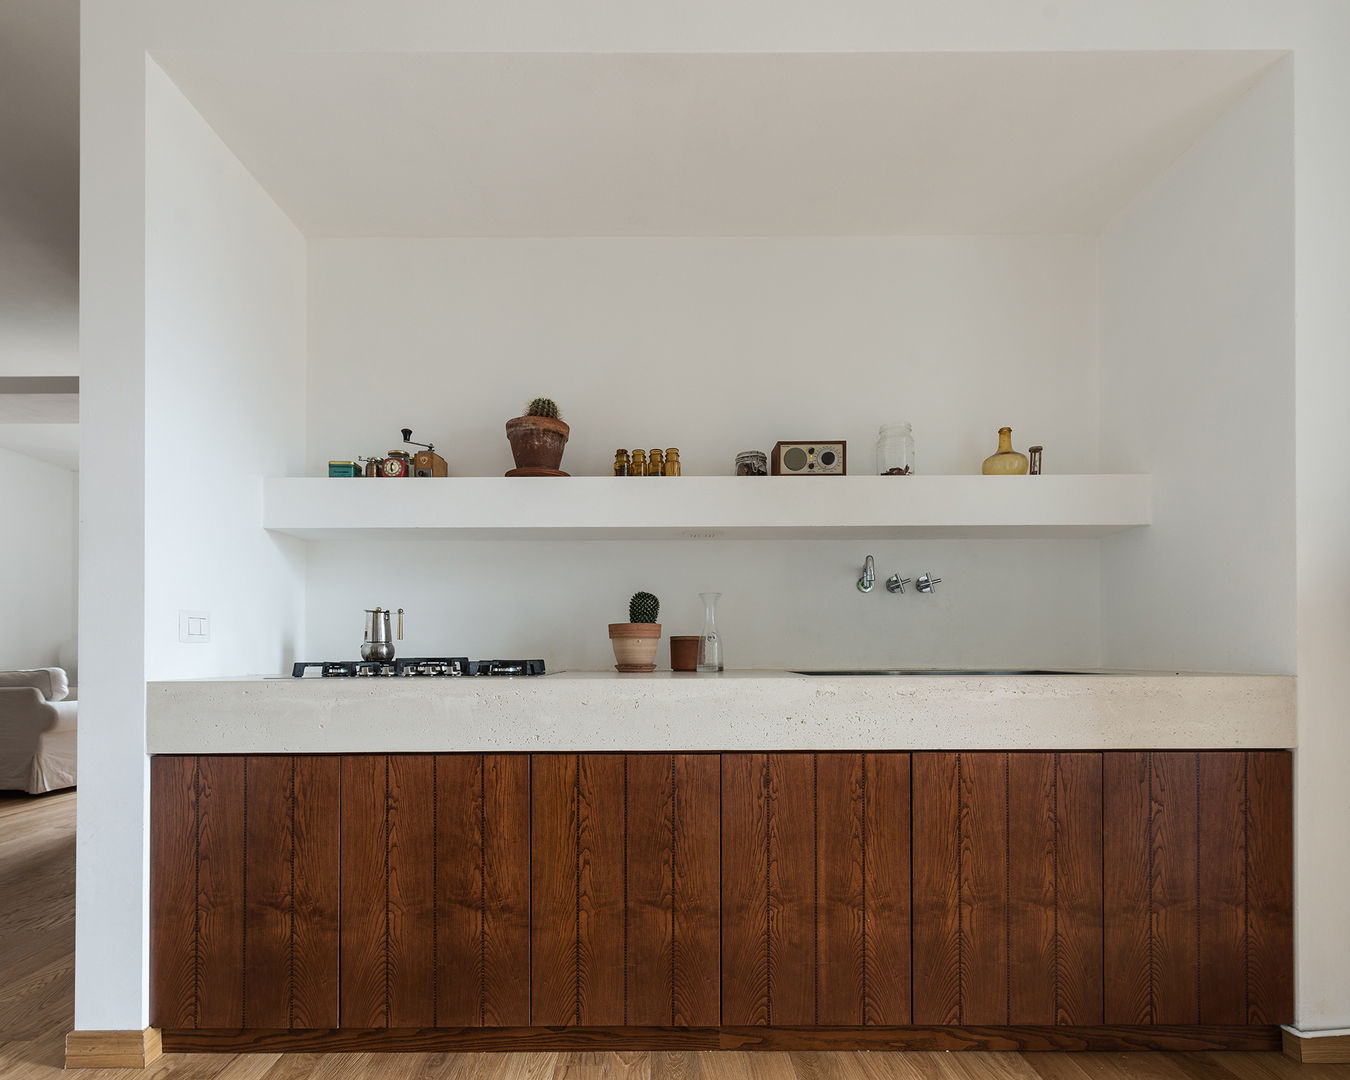 Woodboard House: Wohnungsrenovierung mit Charme, Atelier Blank Atelier Blank Kitchen